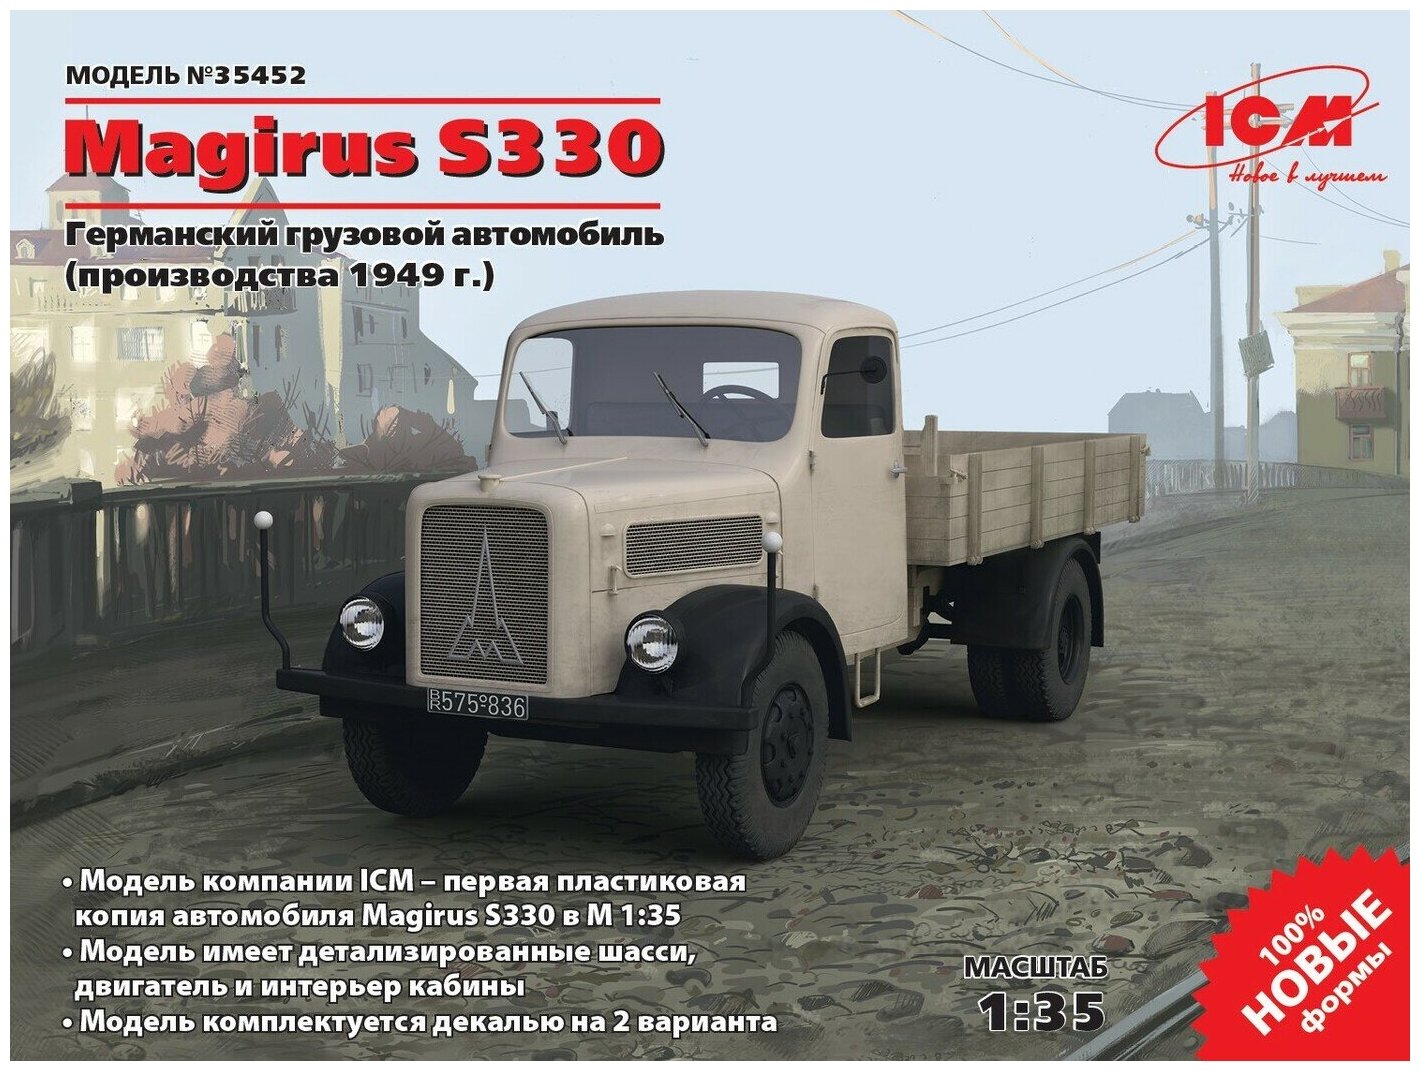 ICM Сборная модель Magirus S330 (производства 1949 г.), Германский грузовой автомобиль, 1/35